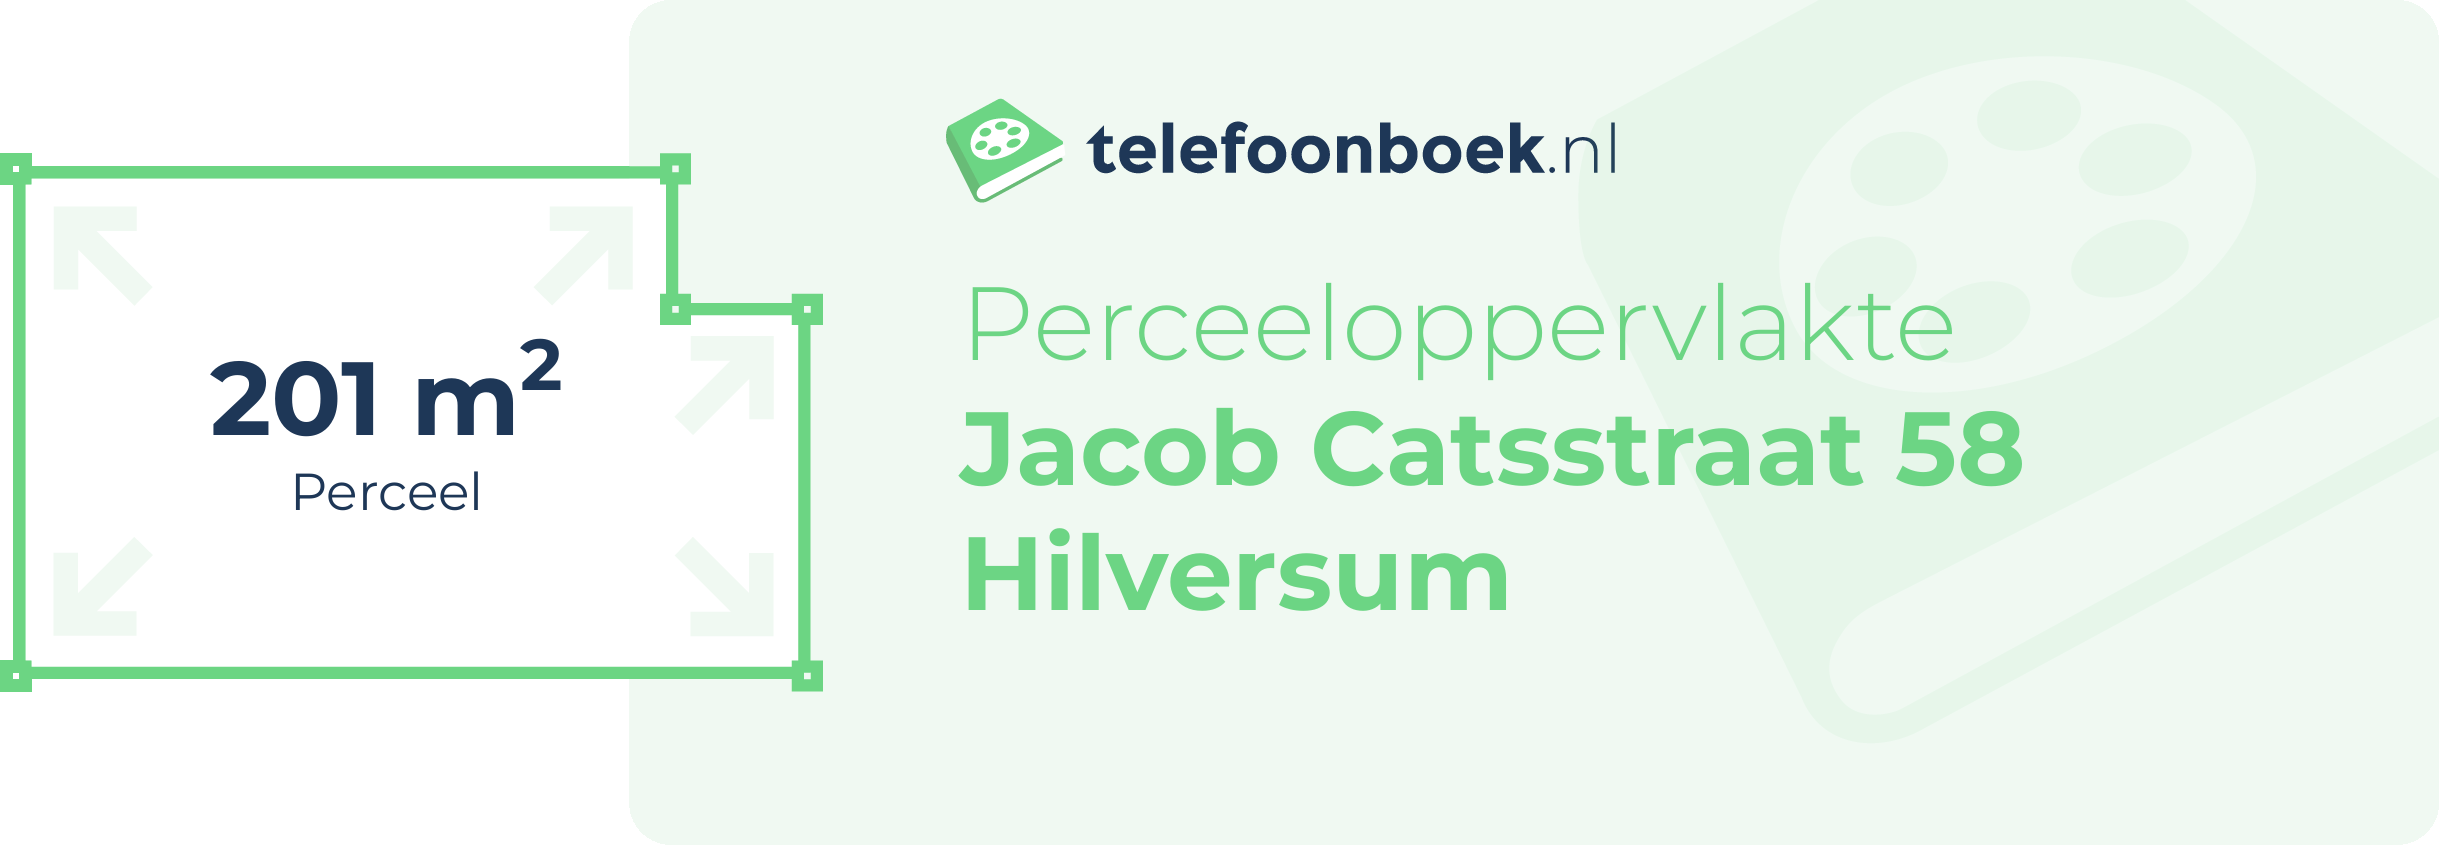 Perceeloppervlakte Jacob Catsstraat 58 Hilversum